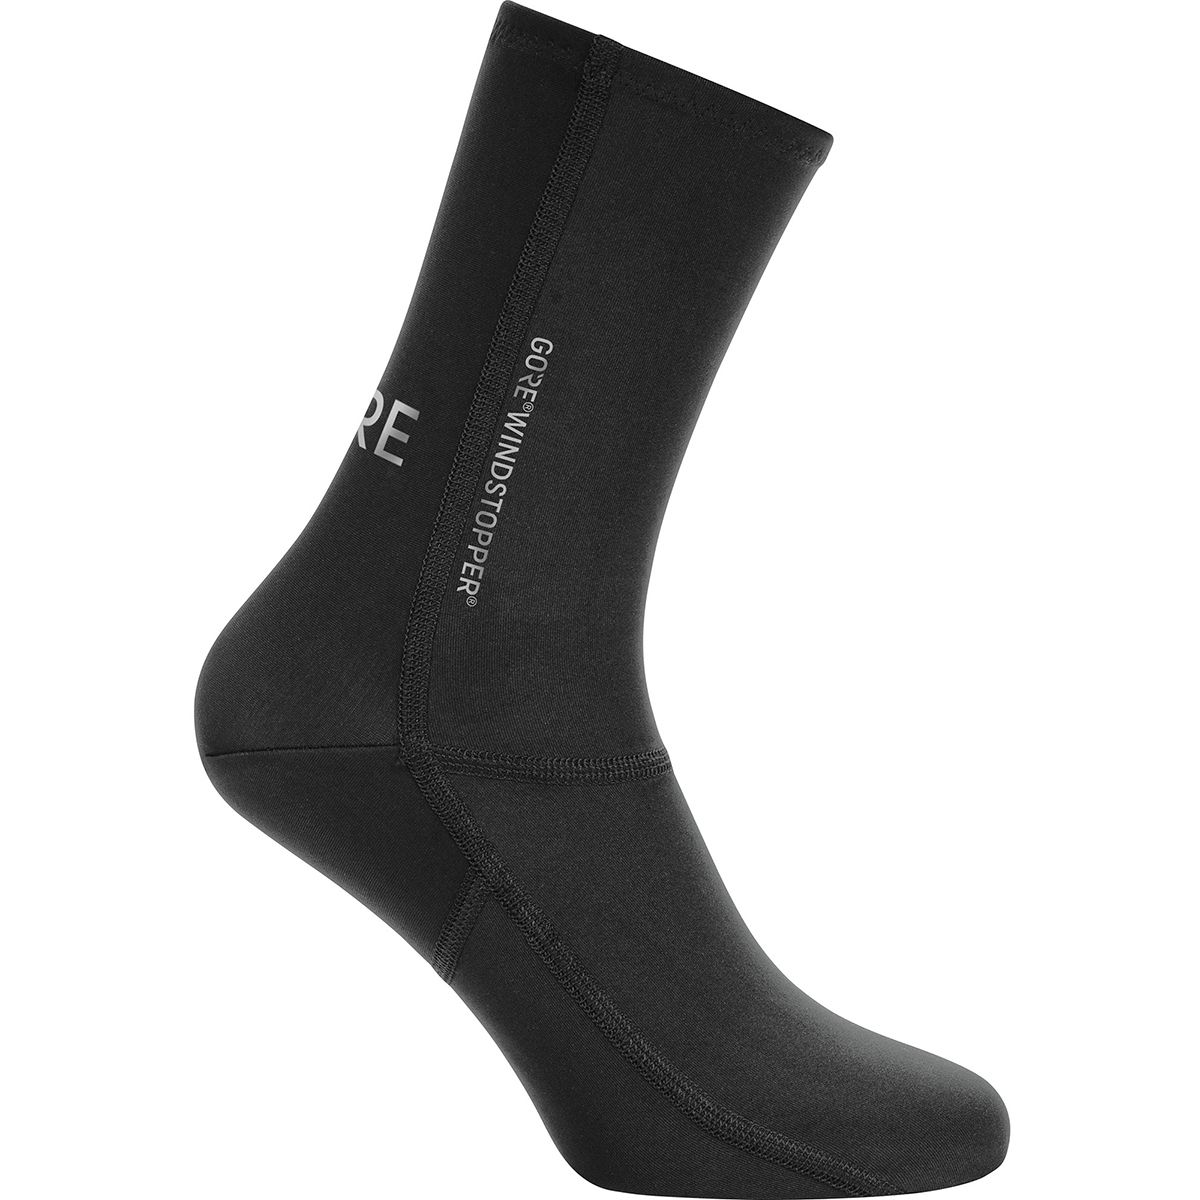 Gore Wear C3 Partial Gore Windstopper Socks - Men's